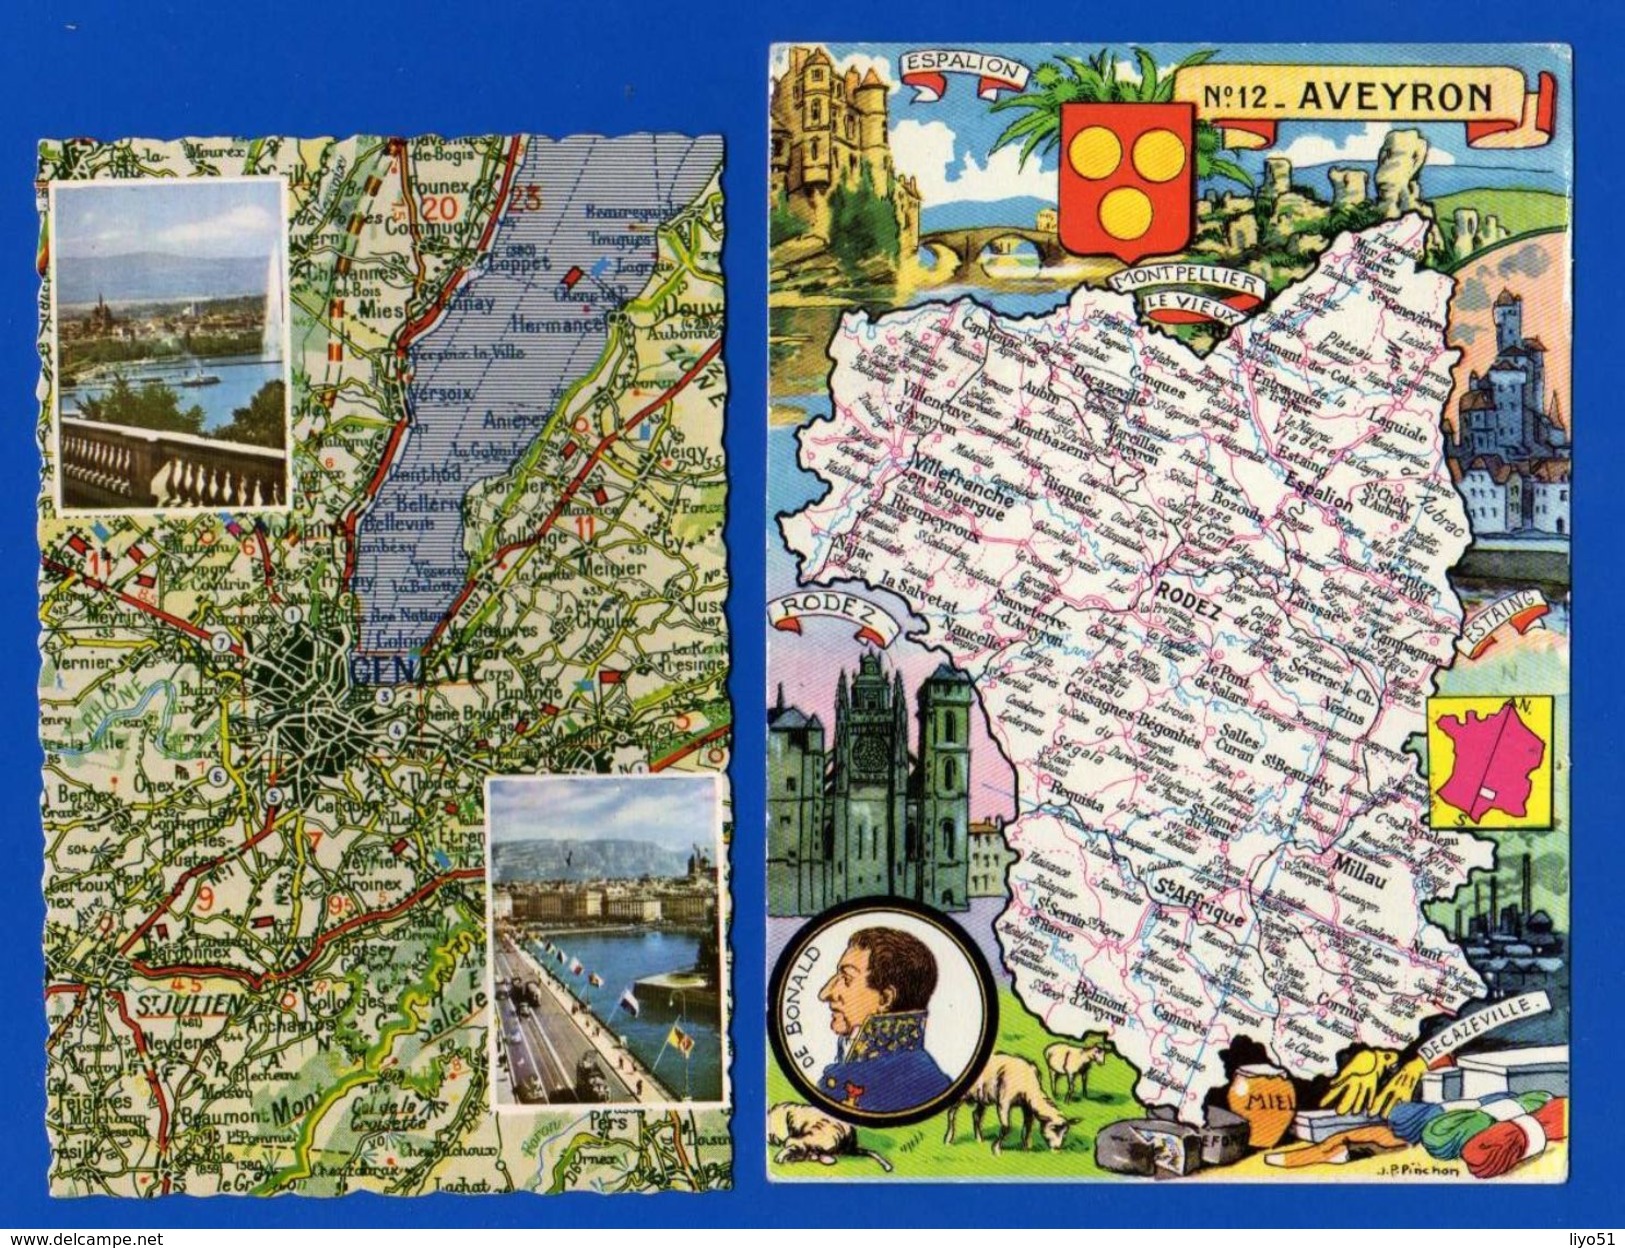 lot de 52 cartes postales fantaisies : thème départements cartes et régions . Toutes scannées .quelques rousseurs